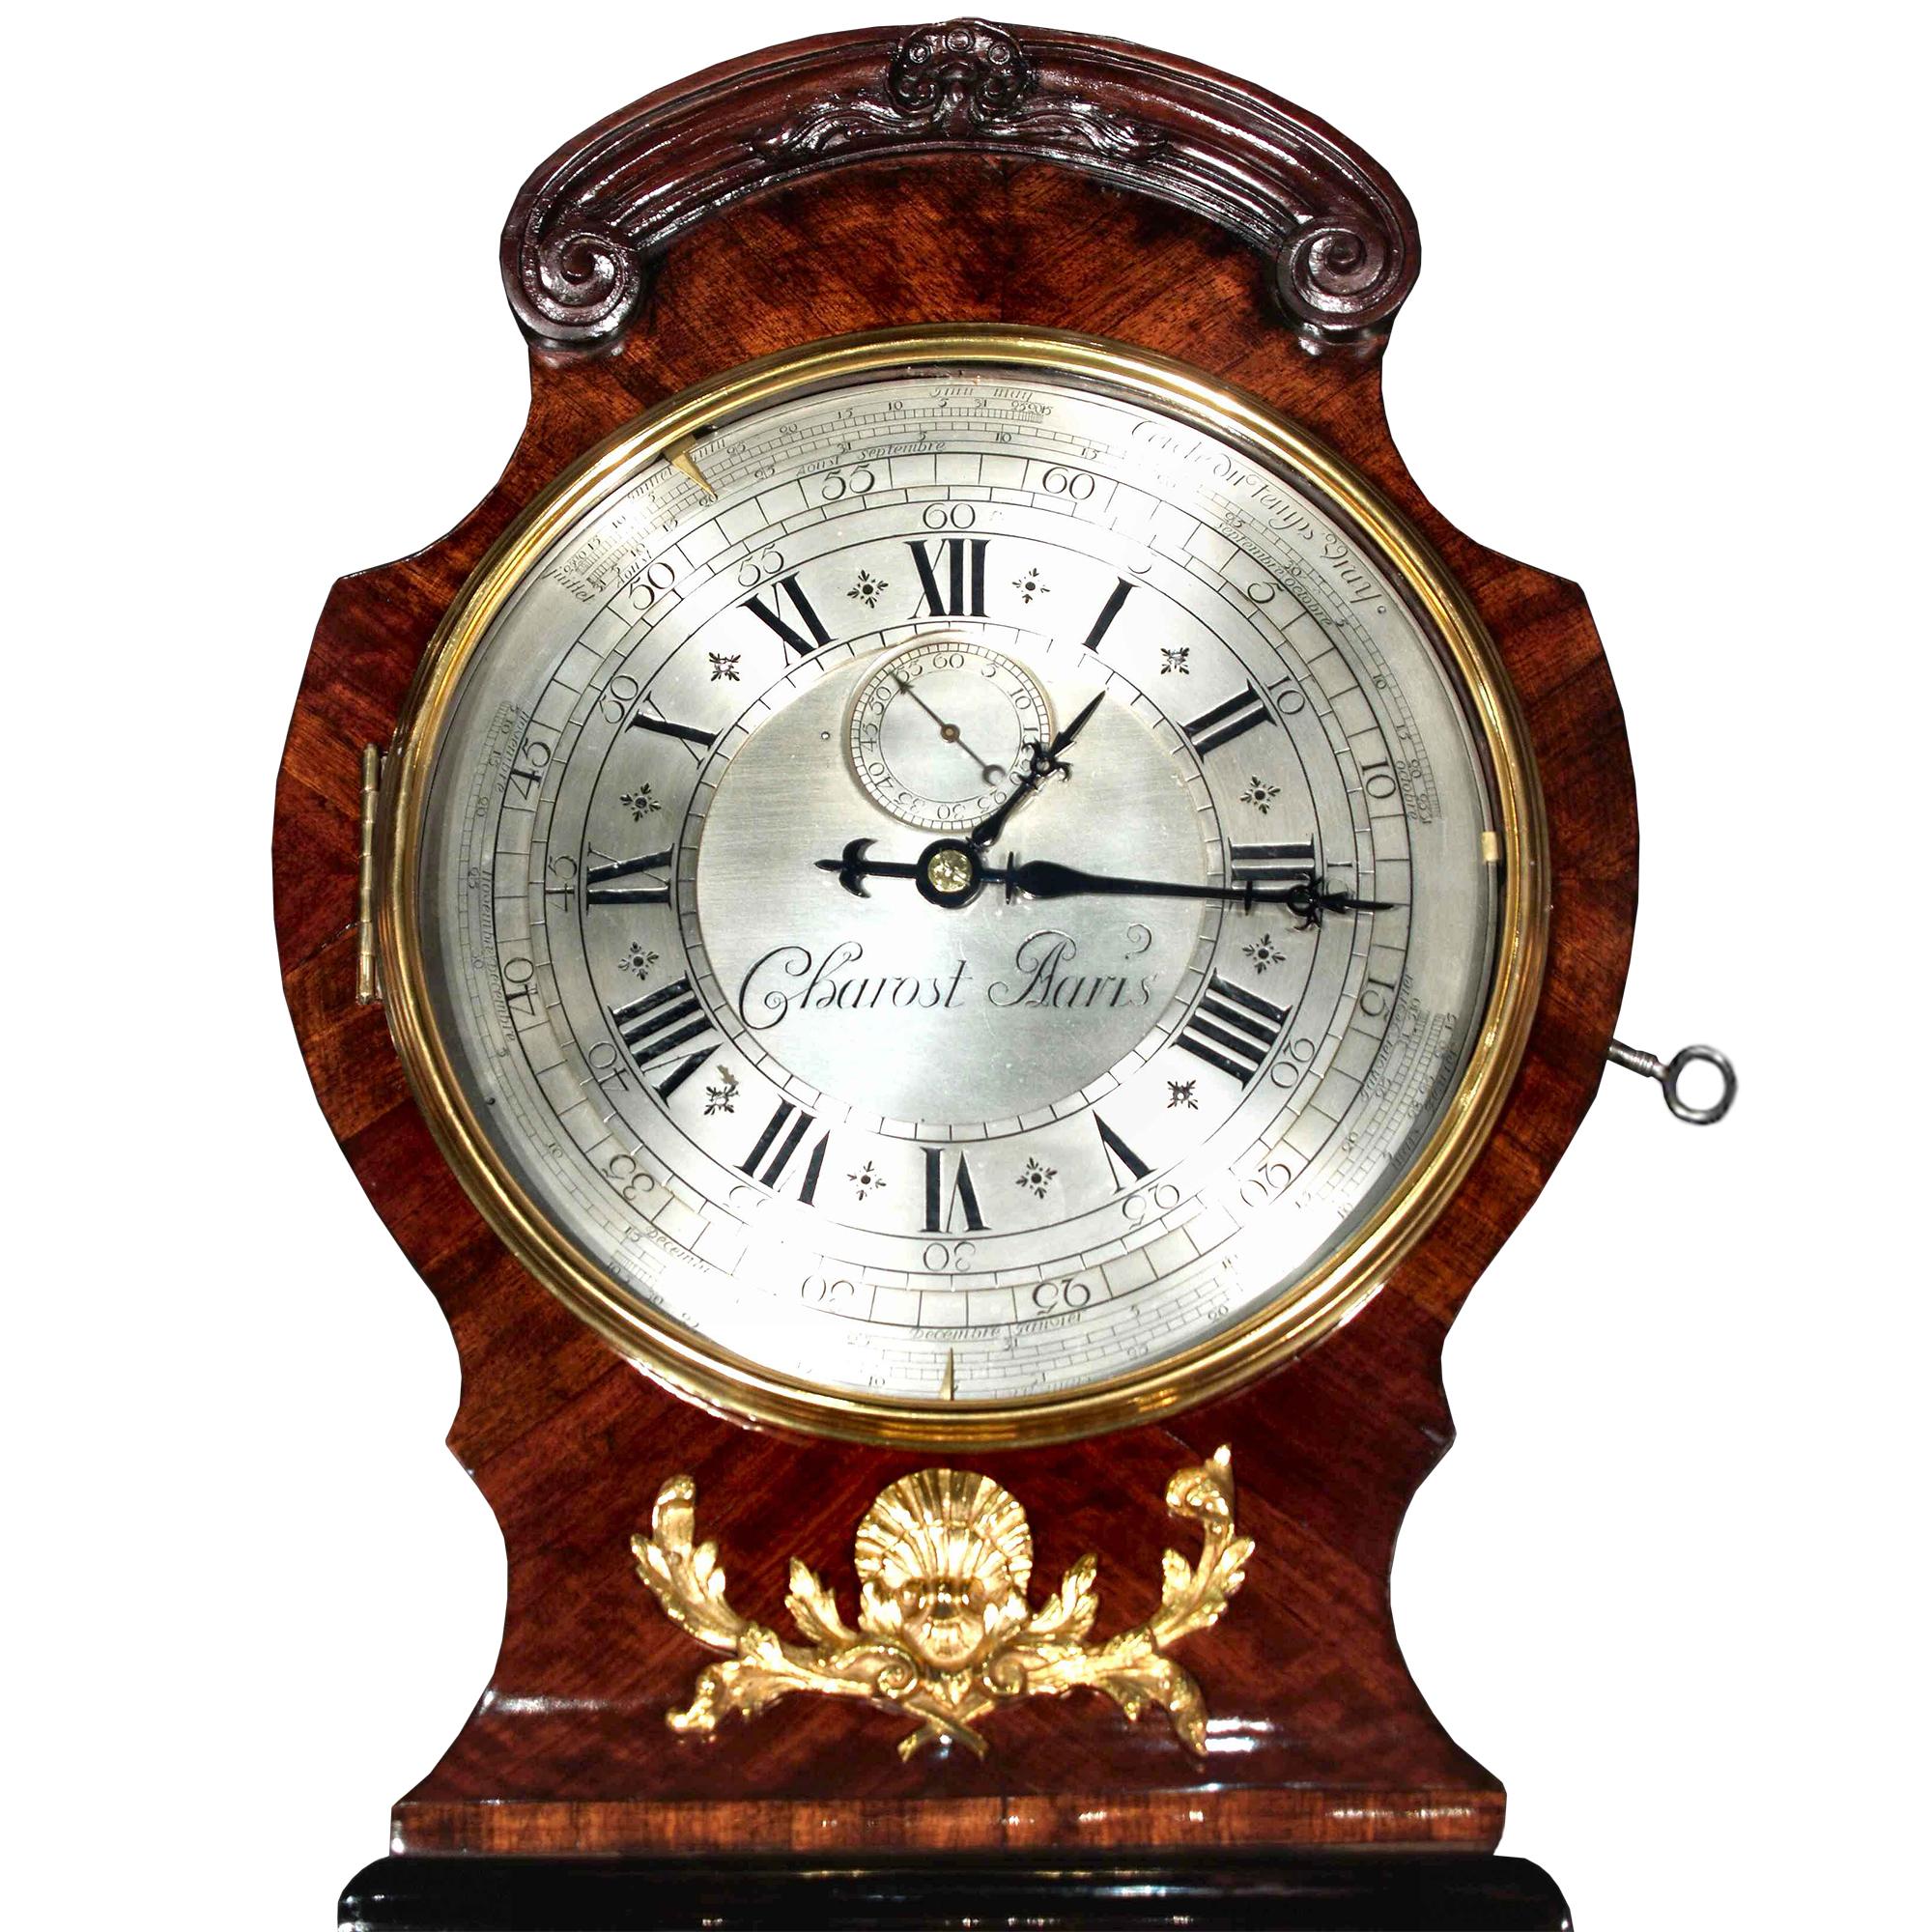 Eine aufsehenerregende französische Standuhr aus der Zeit Ludwigs XV., um 1740, mit einem äußerst seltenen Uhrwerk, signiert Jean Charost. Das Originalgehäuse aus Königsholz, Ebenholz und Palisanderfurnier ist mit eindrucksvollen Ormolu-Beschlägen